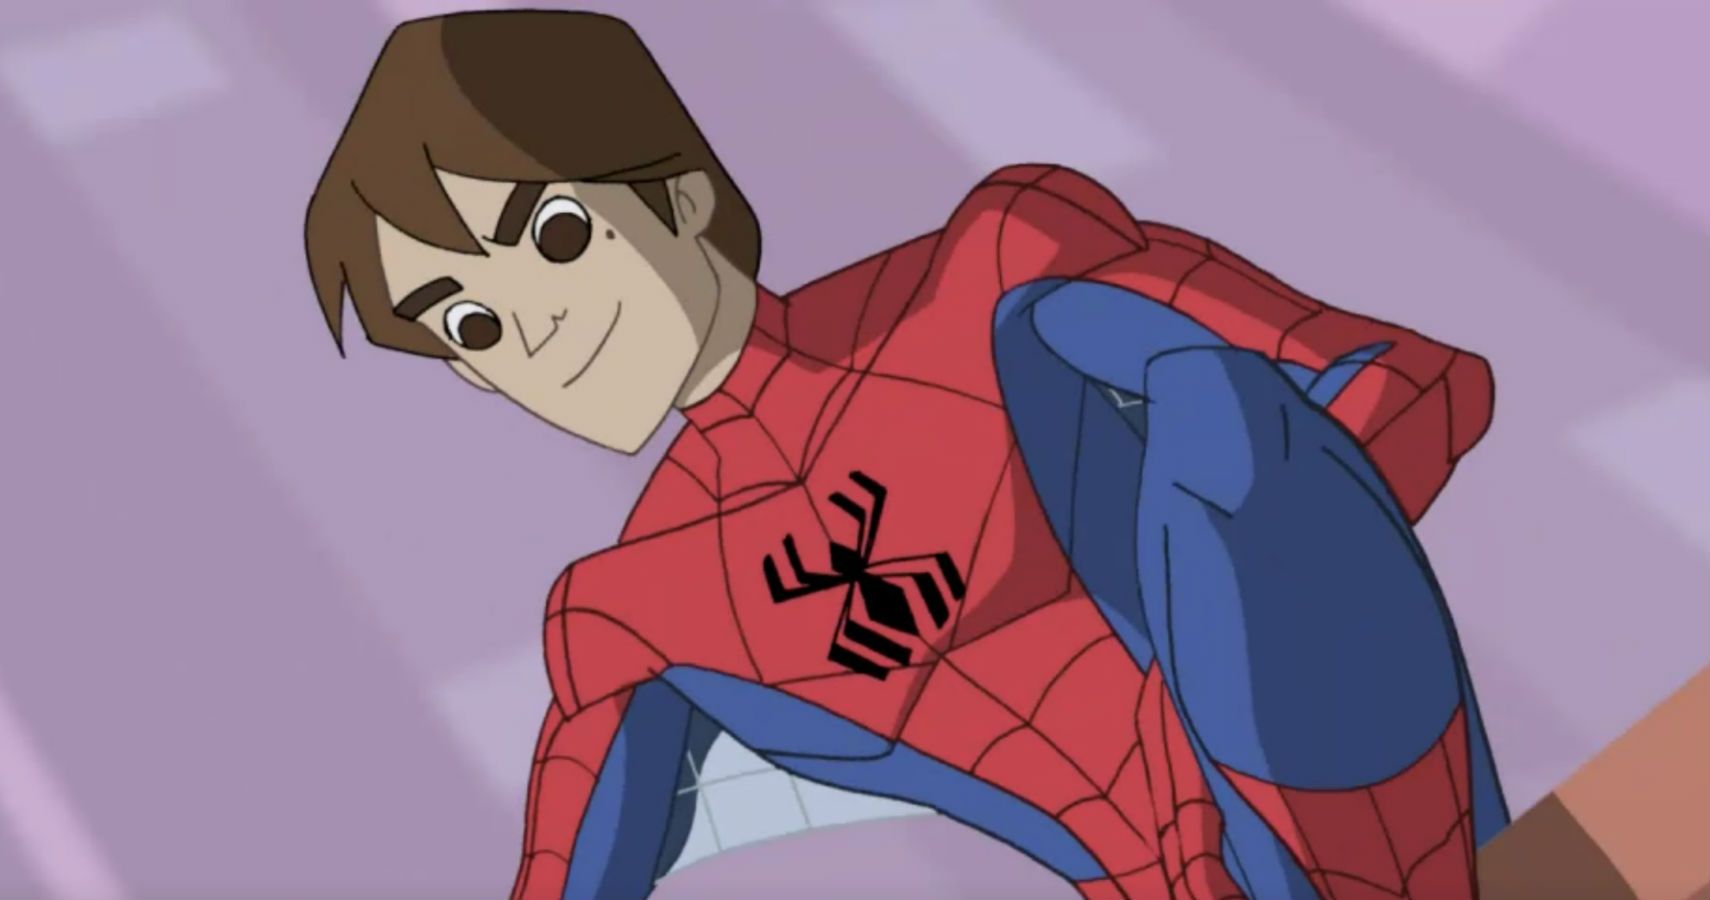 Spectacular Spider-Man: 10 Best Episodes According to IMDB